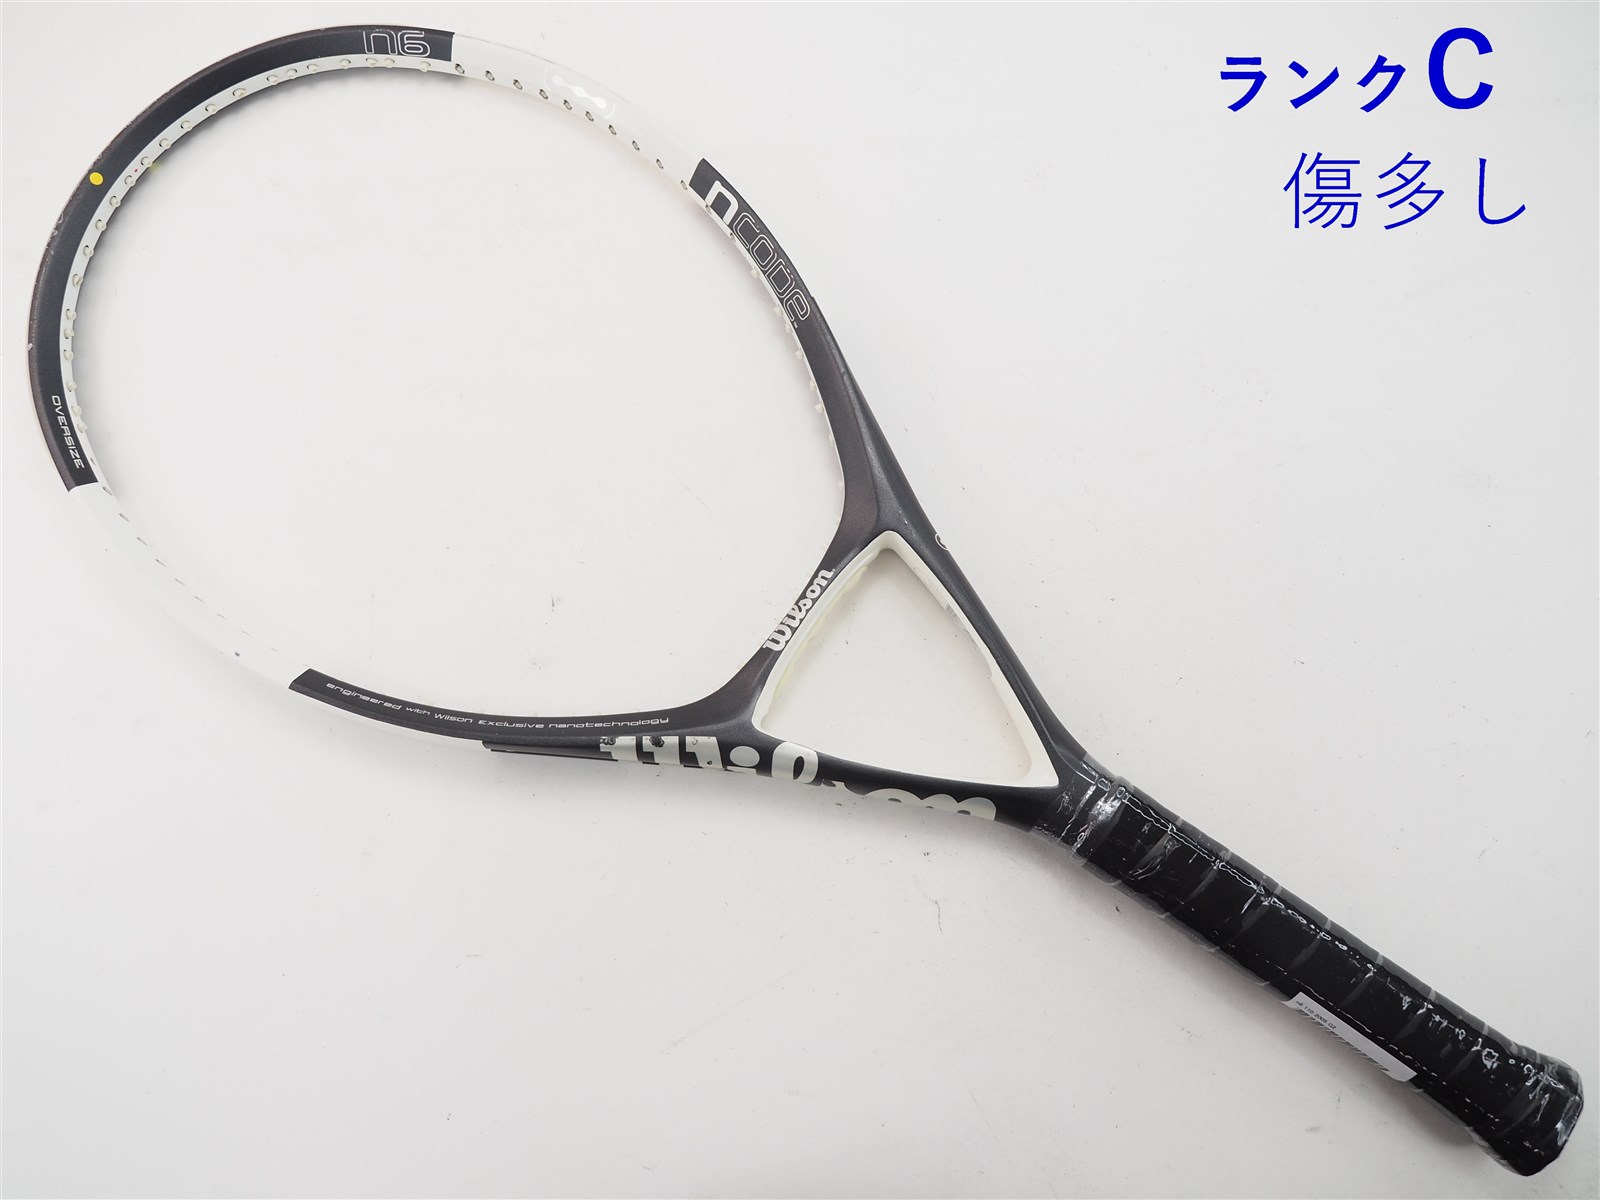 テニスラケット ウィルソン エヌ6 110 2005年モデル (G1)WILSON n6 110 ...